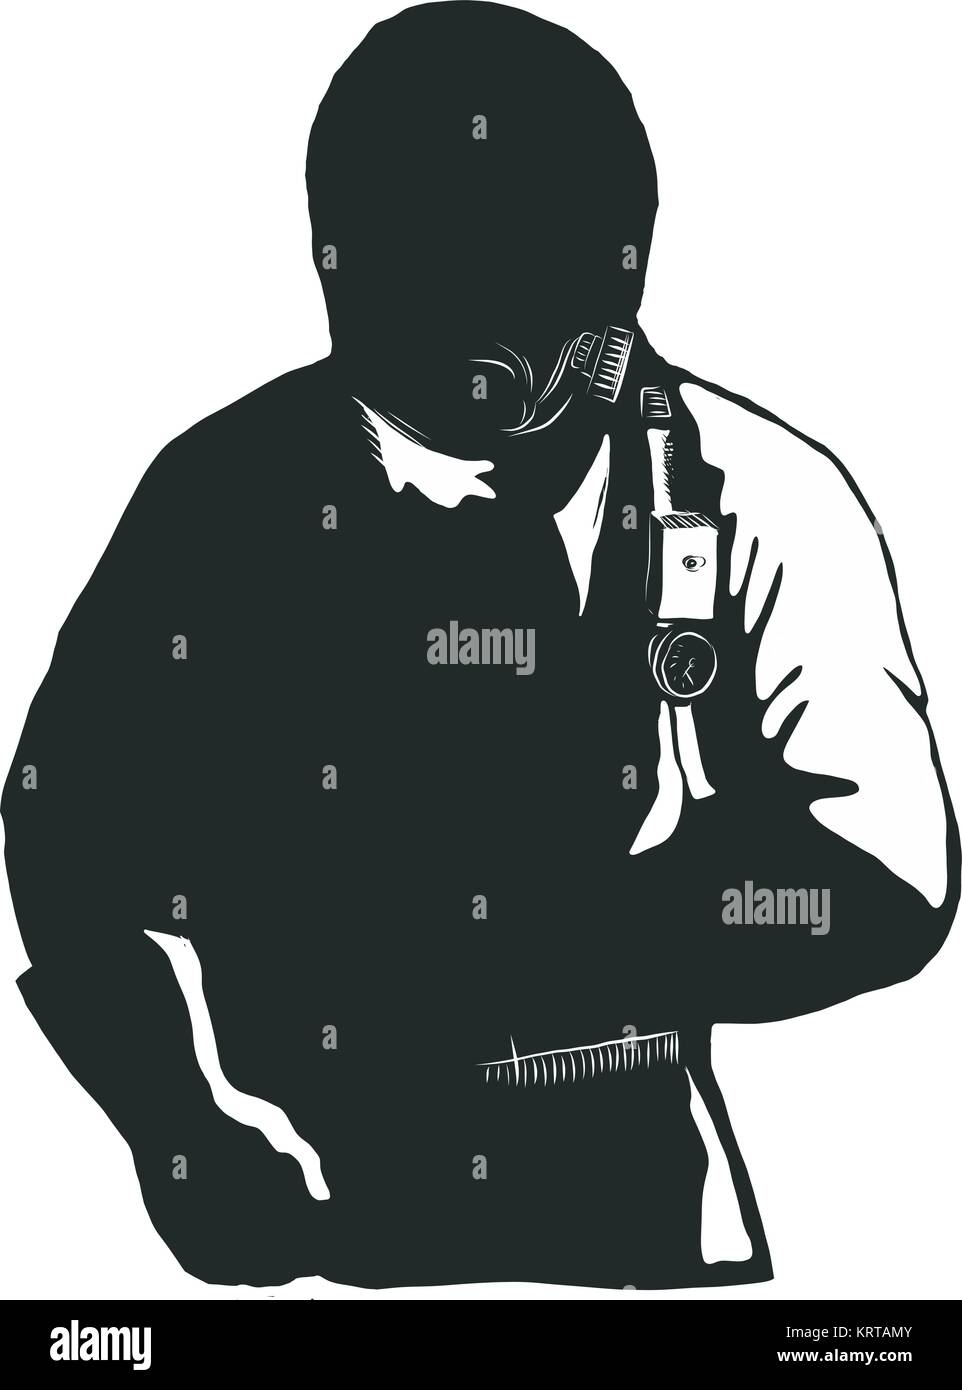 Stile Scratchboard illustrazione di un EMT,emergenza tecnico medico, pompiere, personale paramedico, ricercatore, Lavoratore che indossa Hazmat Suit fatto su raschiare Illustrazione Vettoriale